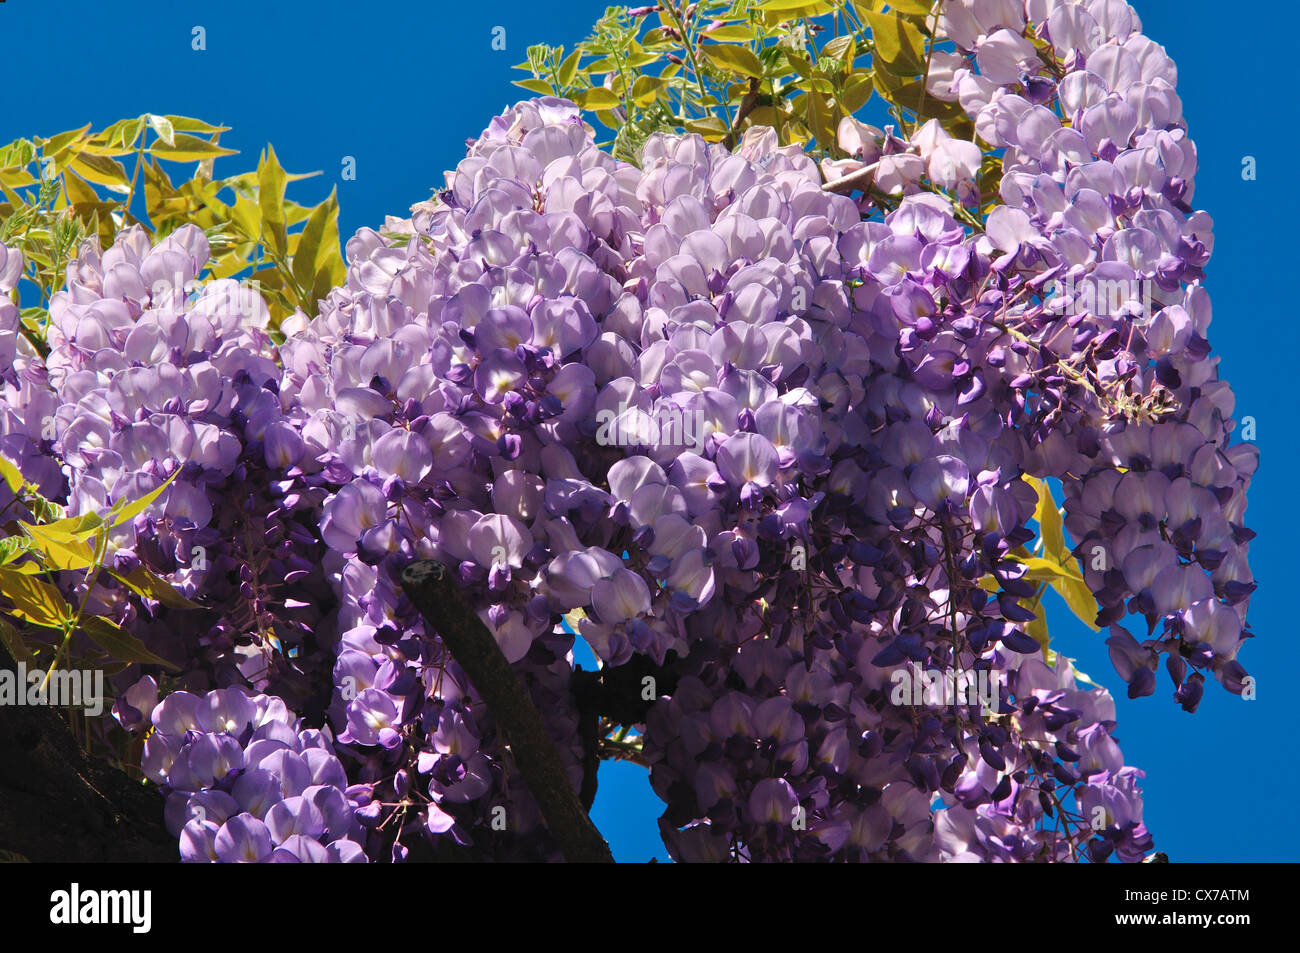 Italy, Lombardy, Wisteria Blossom Stock Photo